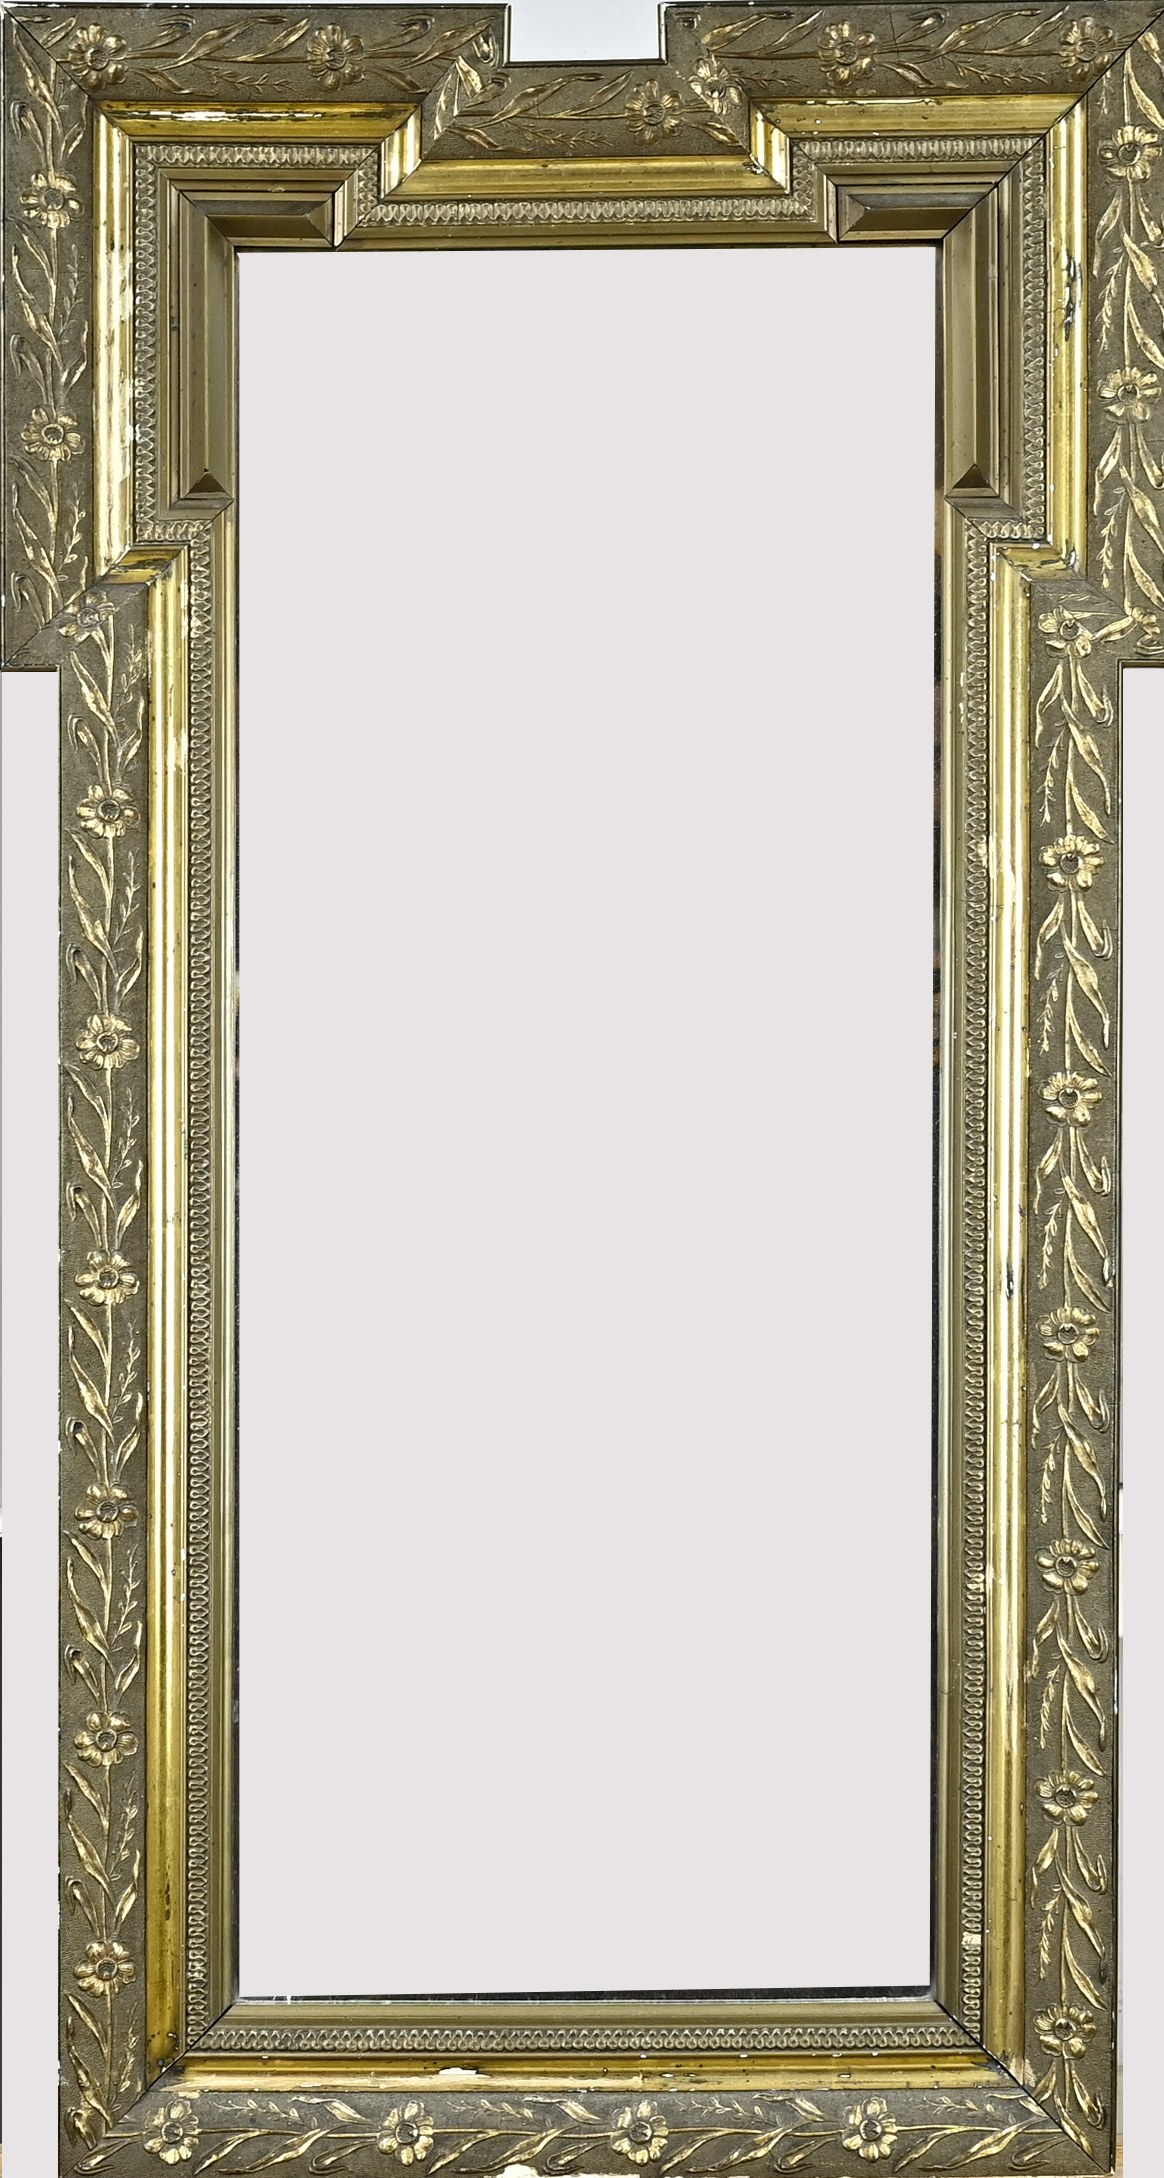 Antique mirror, H 99 x W 52 cm.